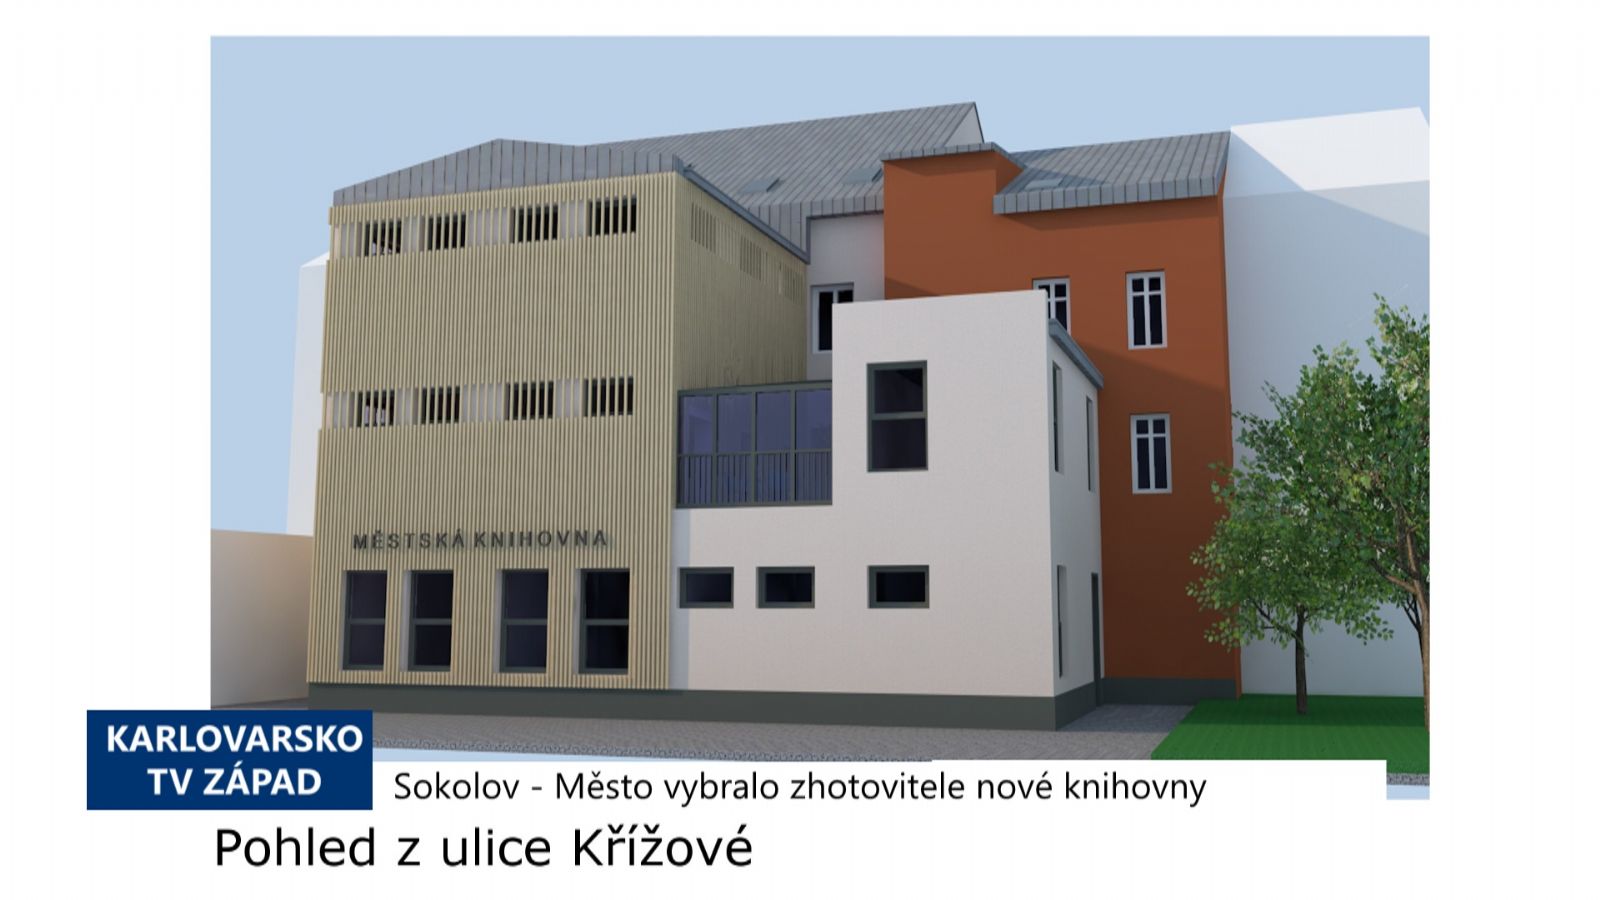 Sokolov: Město vybralo zhotovitele nové knihovny (TV Západ)